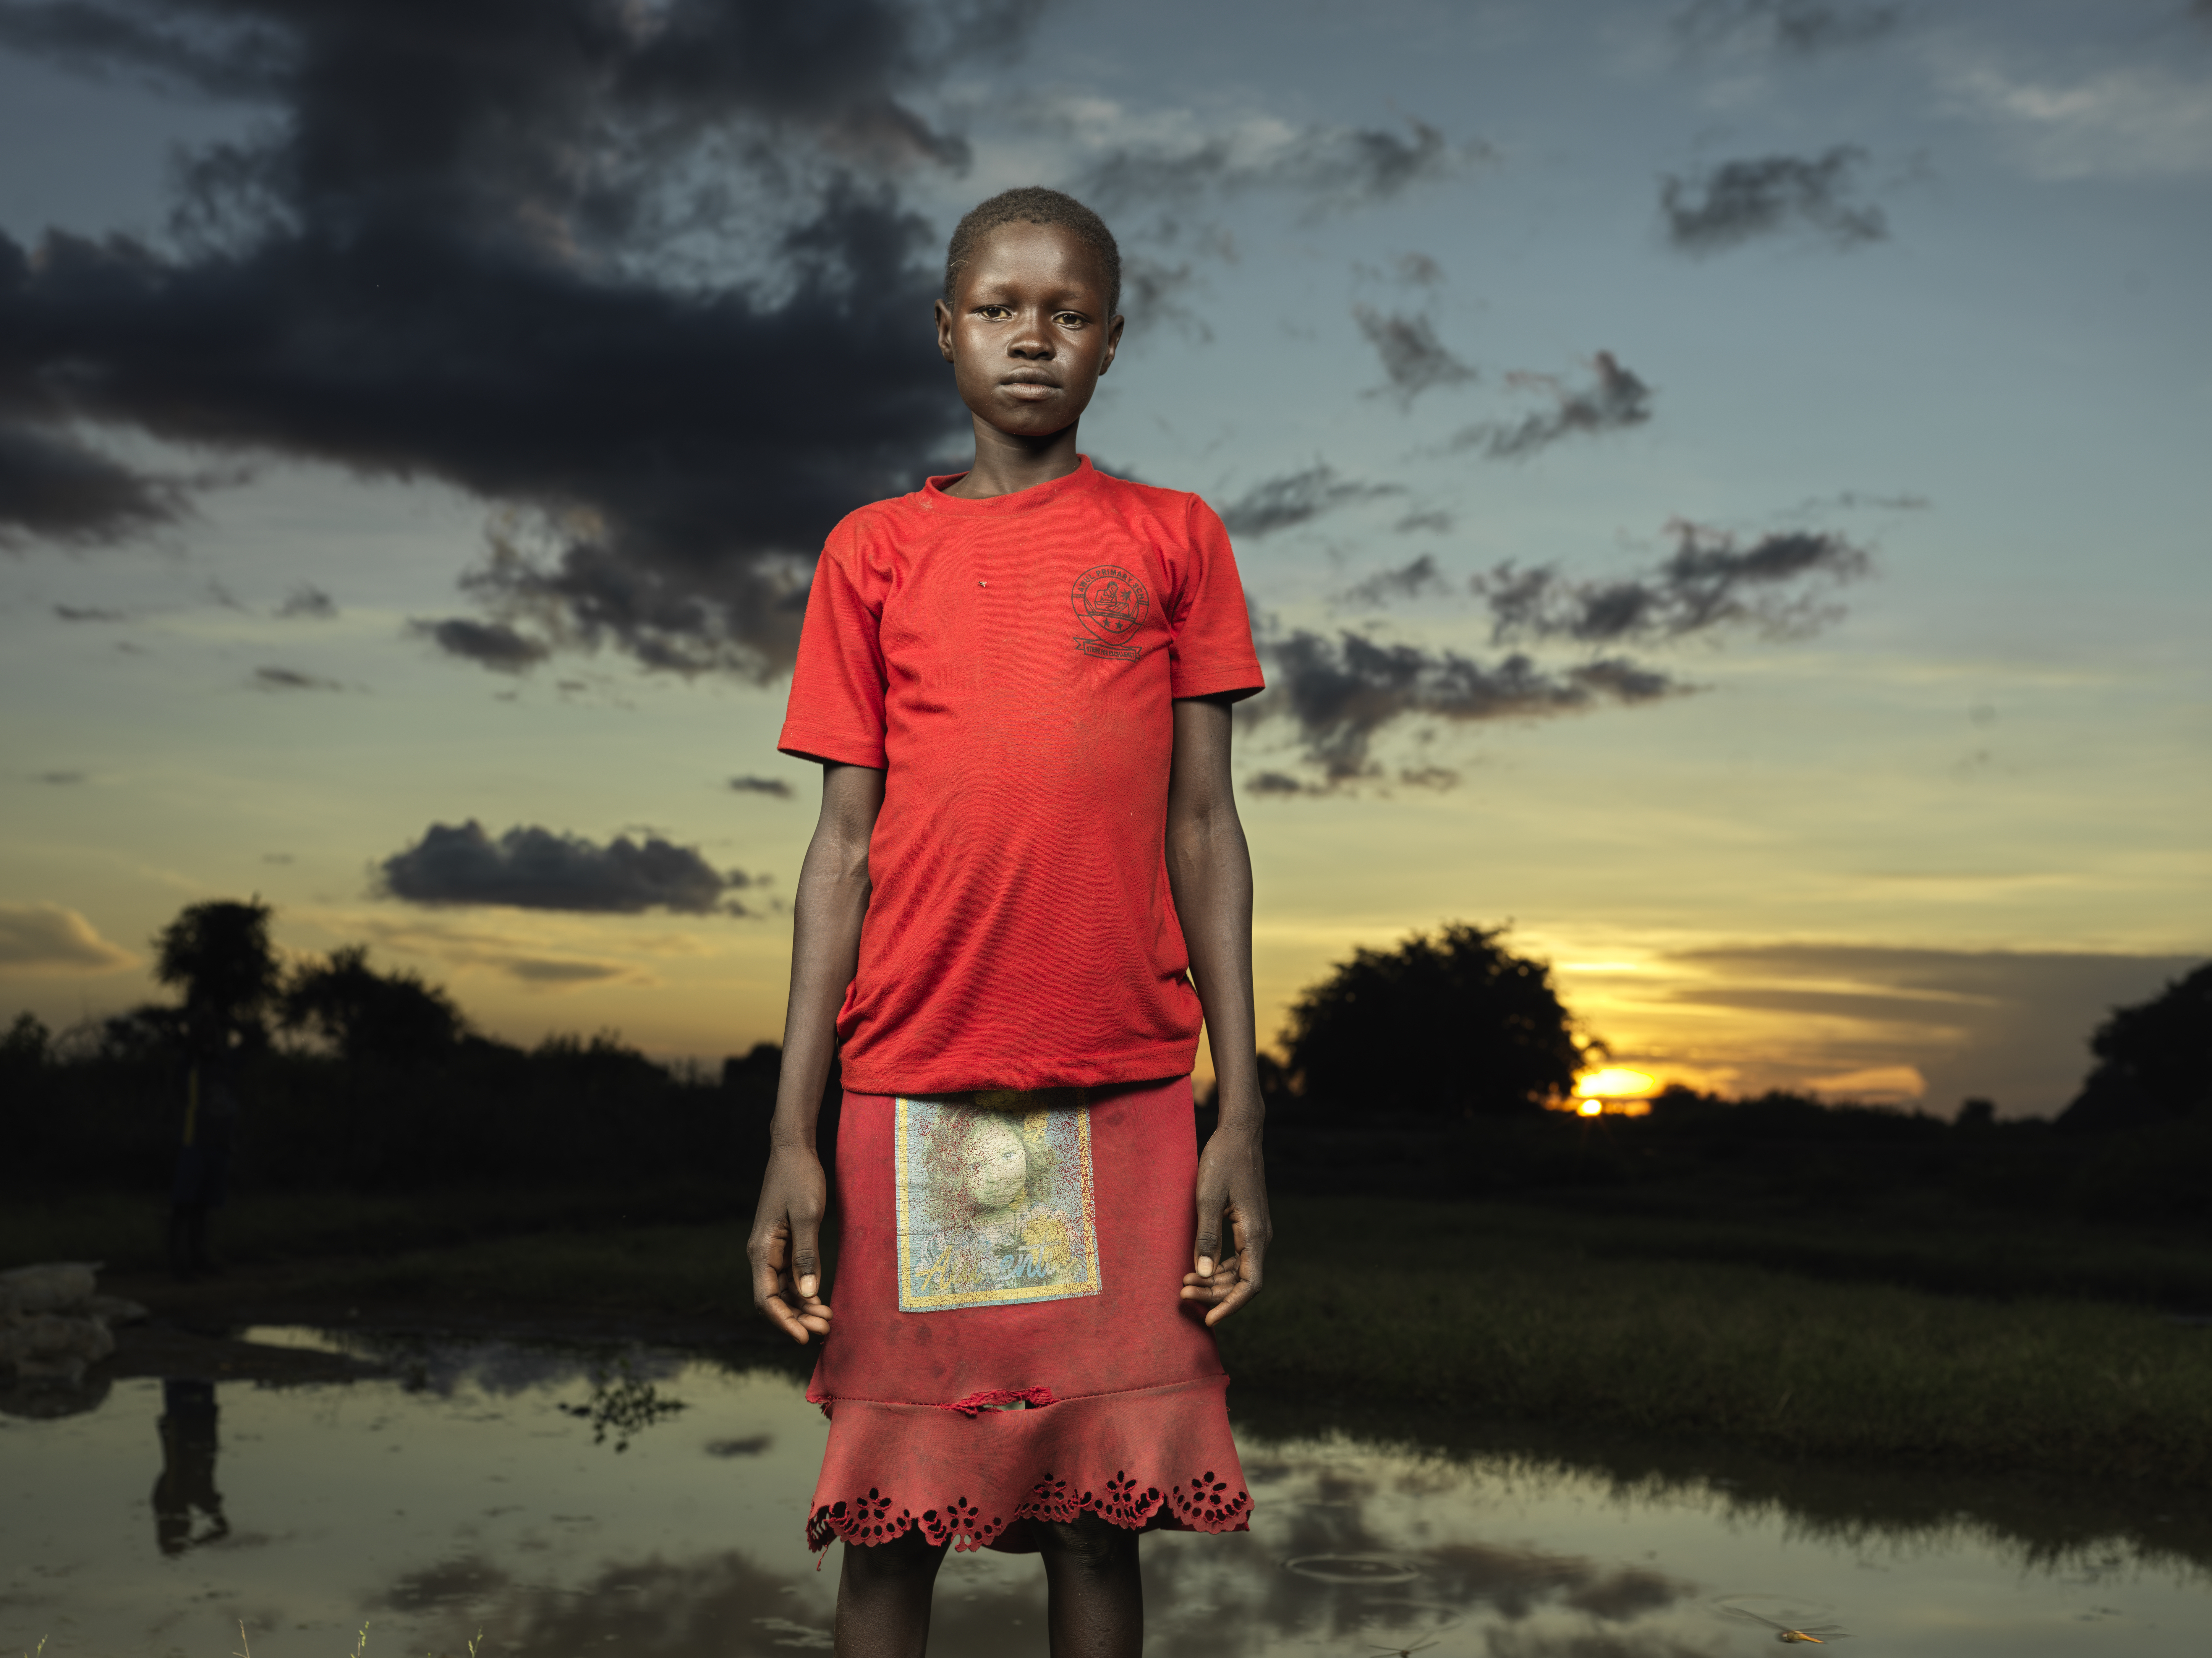 Niña de Sudán del Sur con un vestido rojo brillante fotografiada de pie y sola al atardecer en un campo de desplazados donde vive.